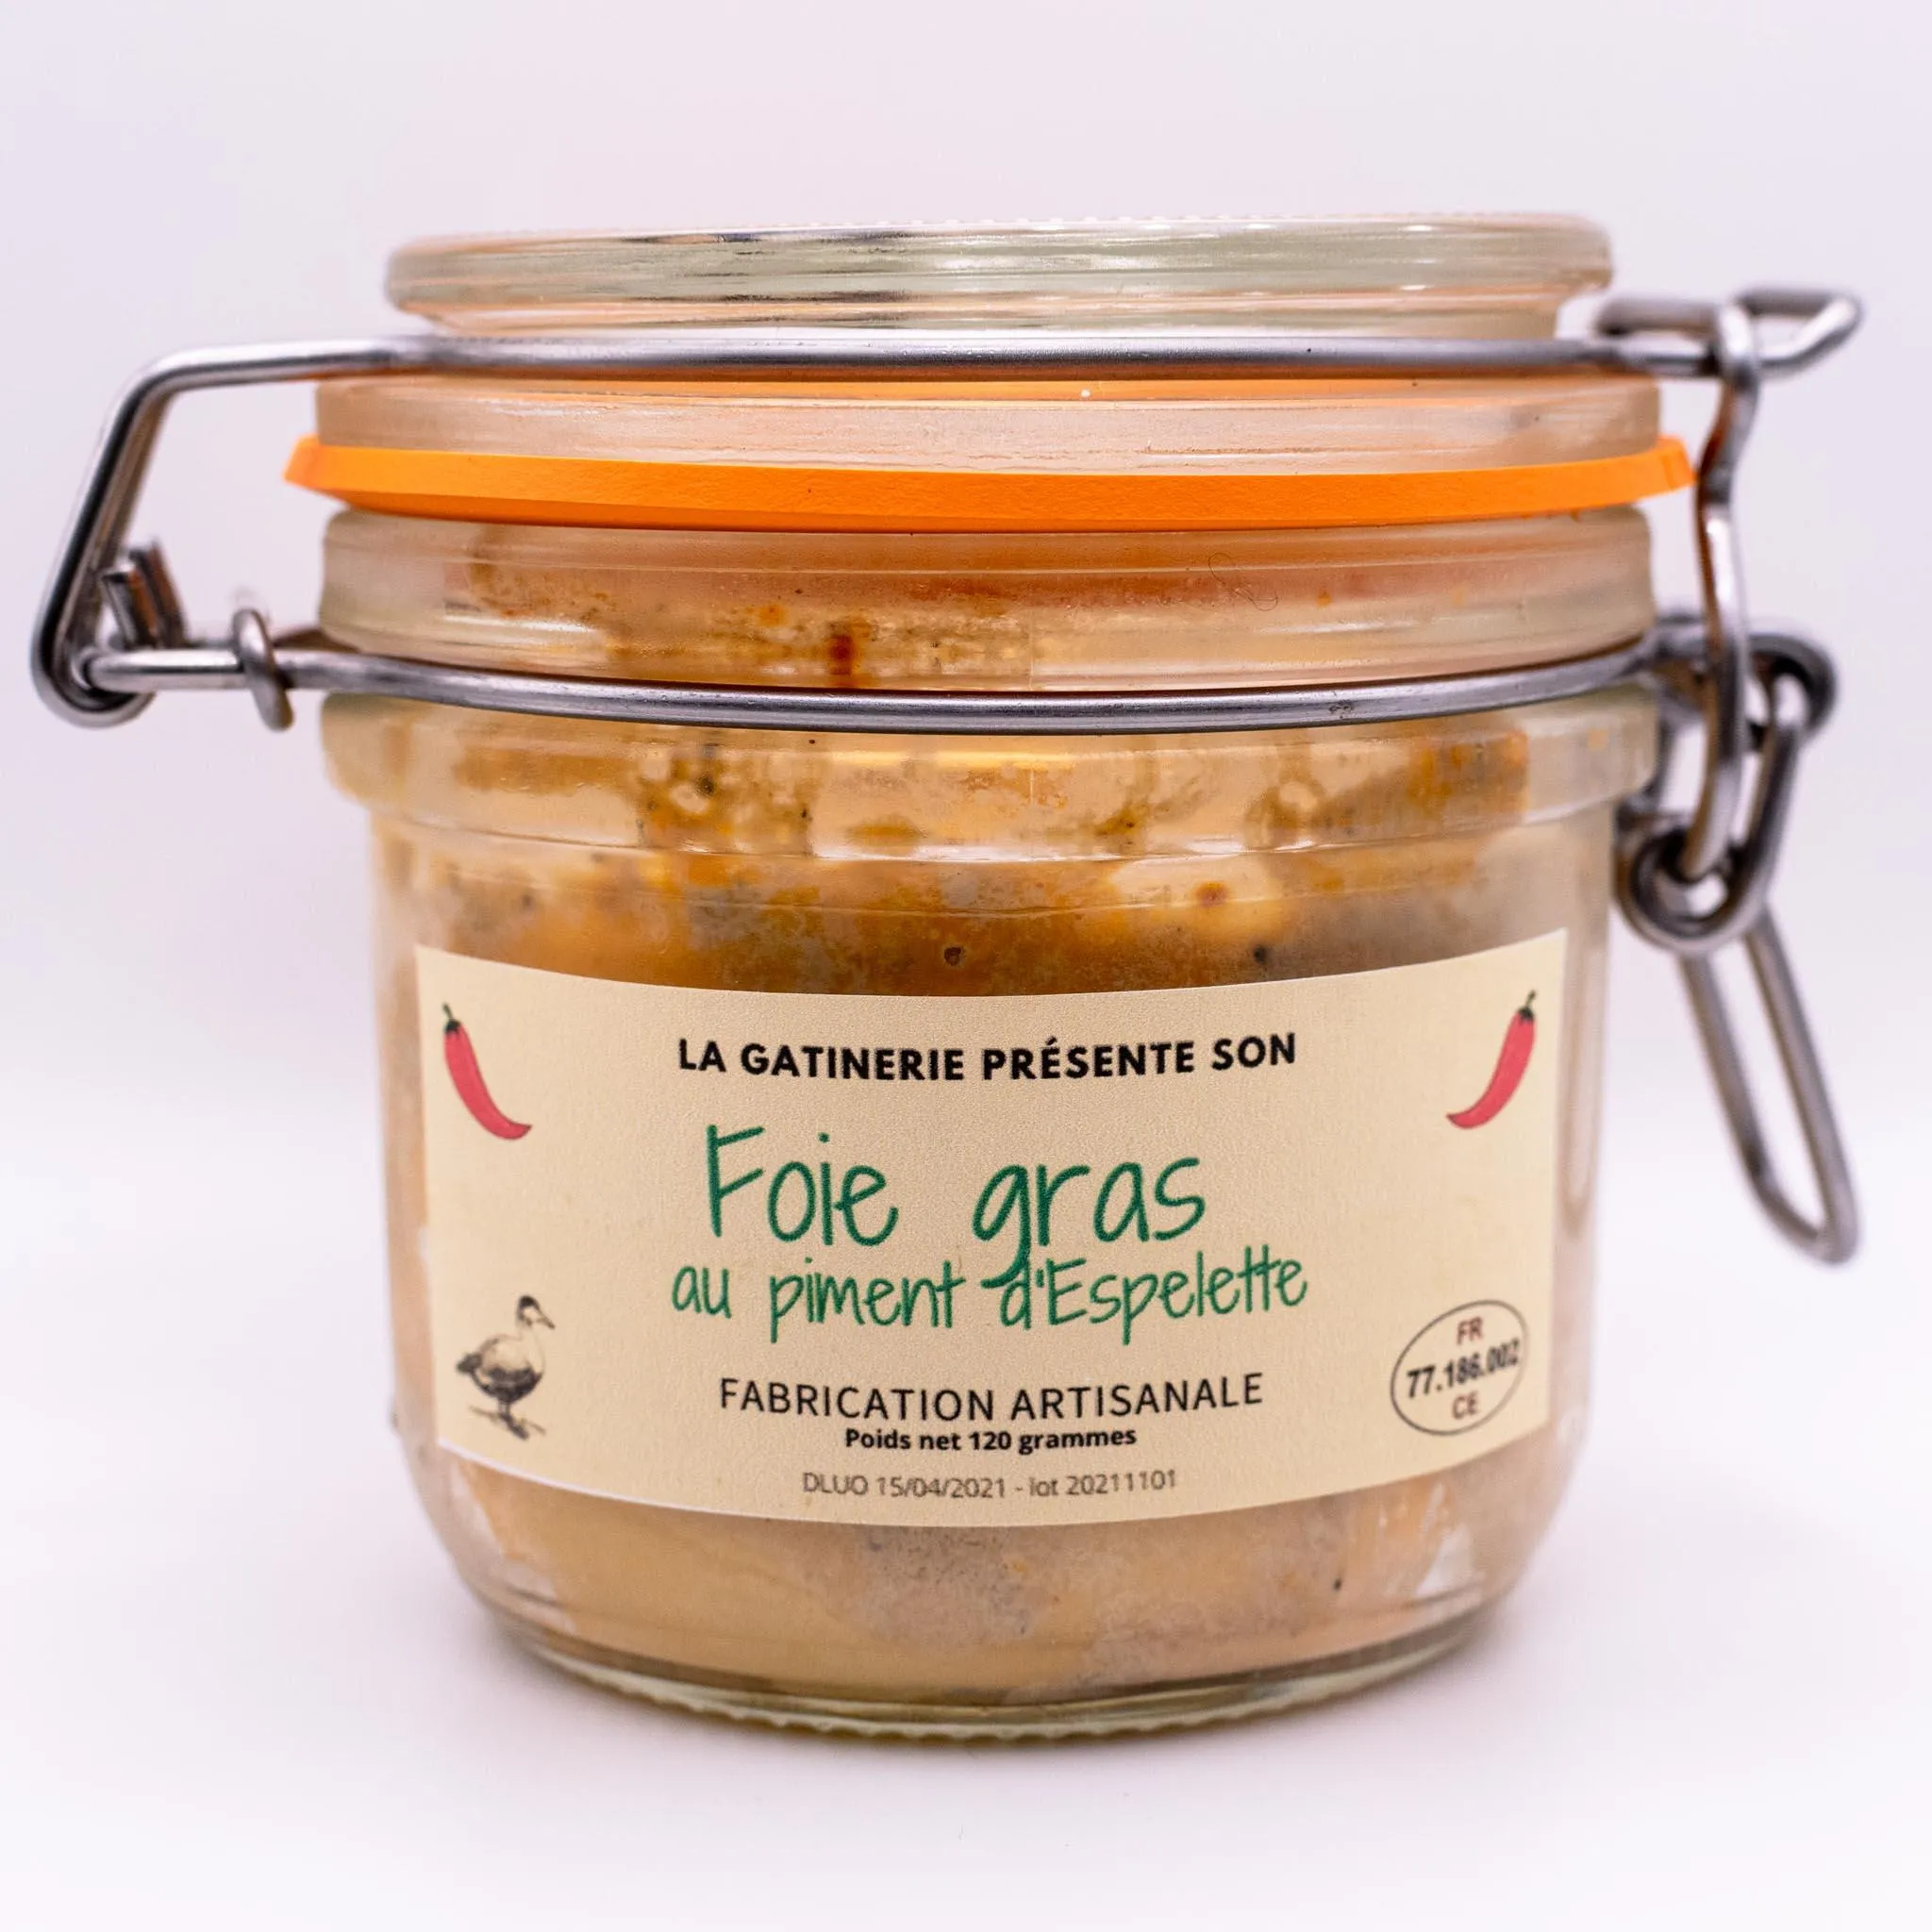 Le foie gras au piment d'Espelette